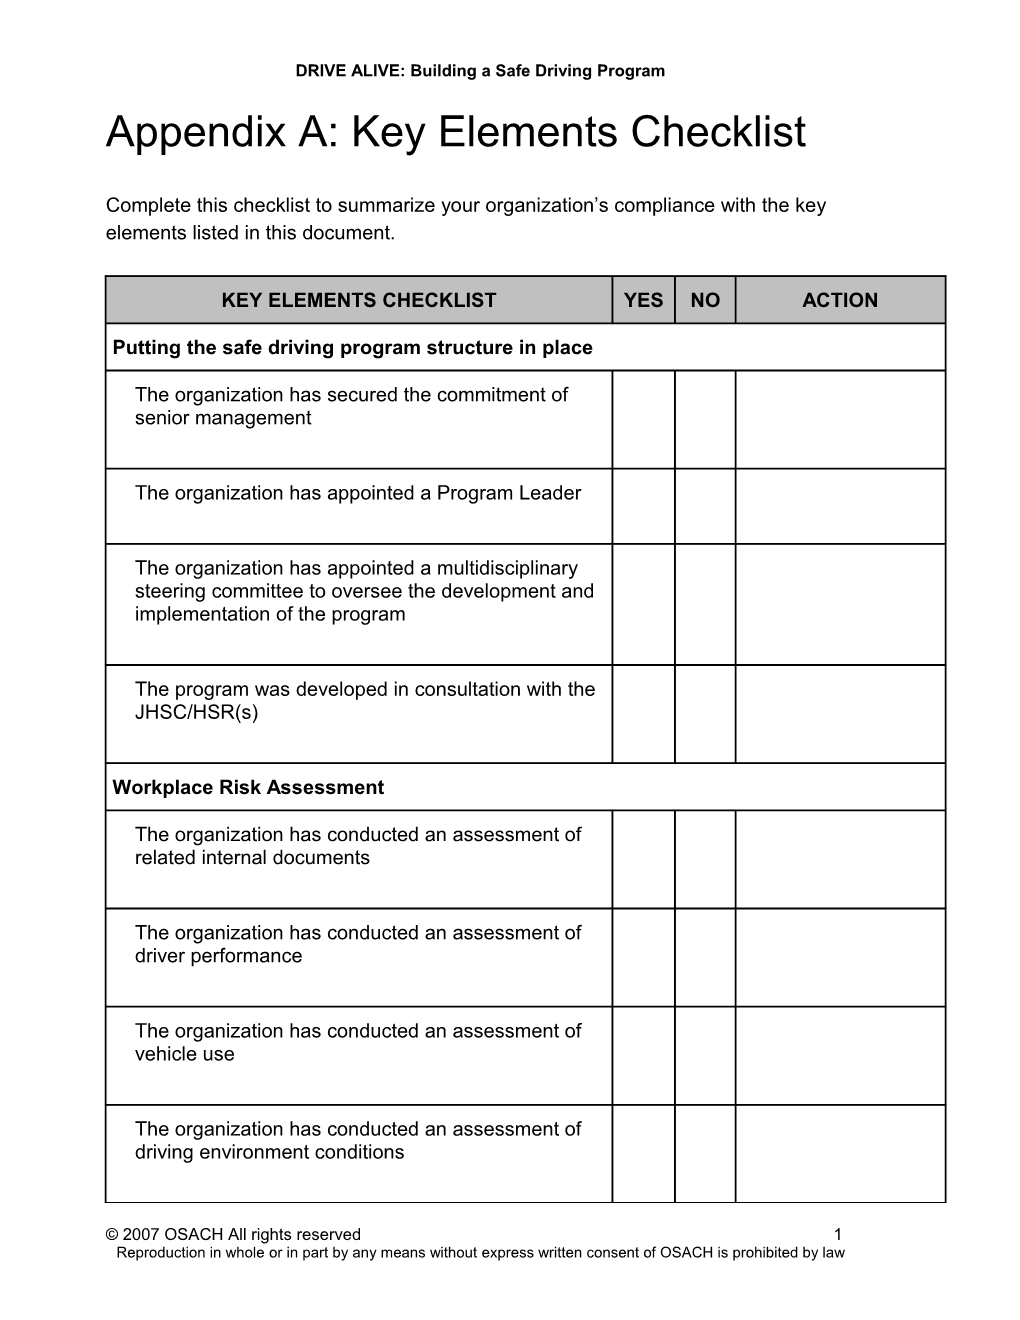 Appendix A: Key Elements Checklist